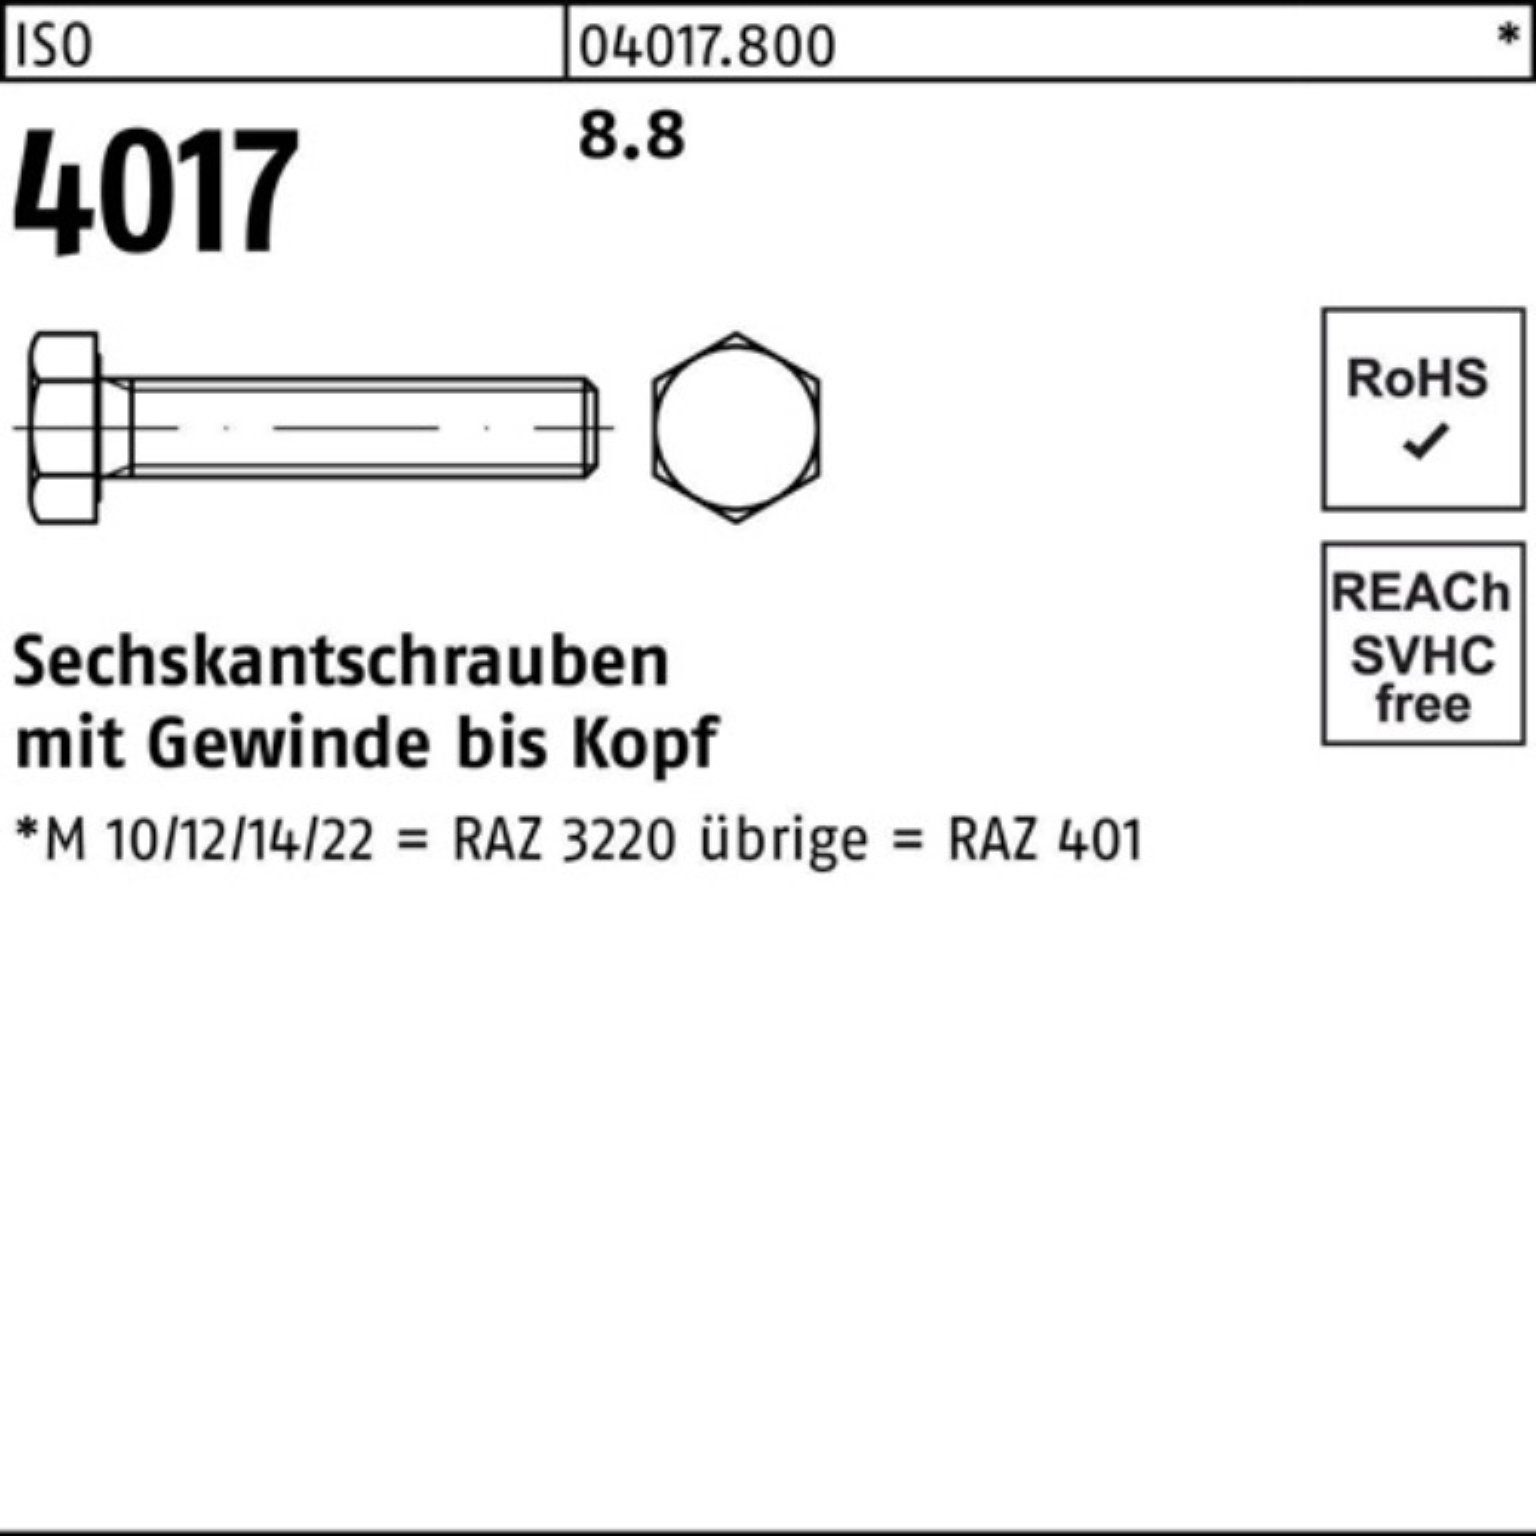 90 ISO Bufab Sechskantschraube Sechskantschraube 8.8 M5x VG Stück 401 200er ISO 4017 200 Pack